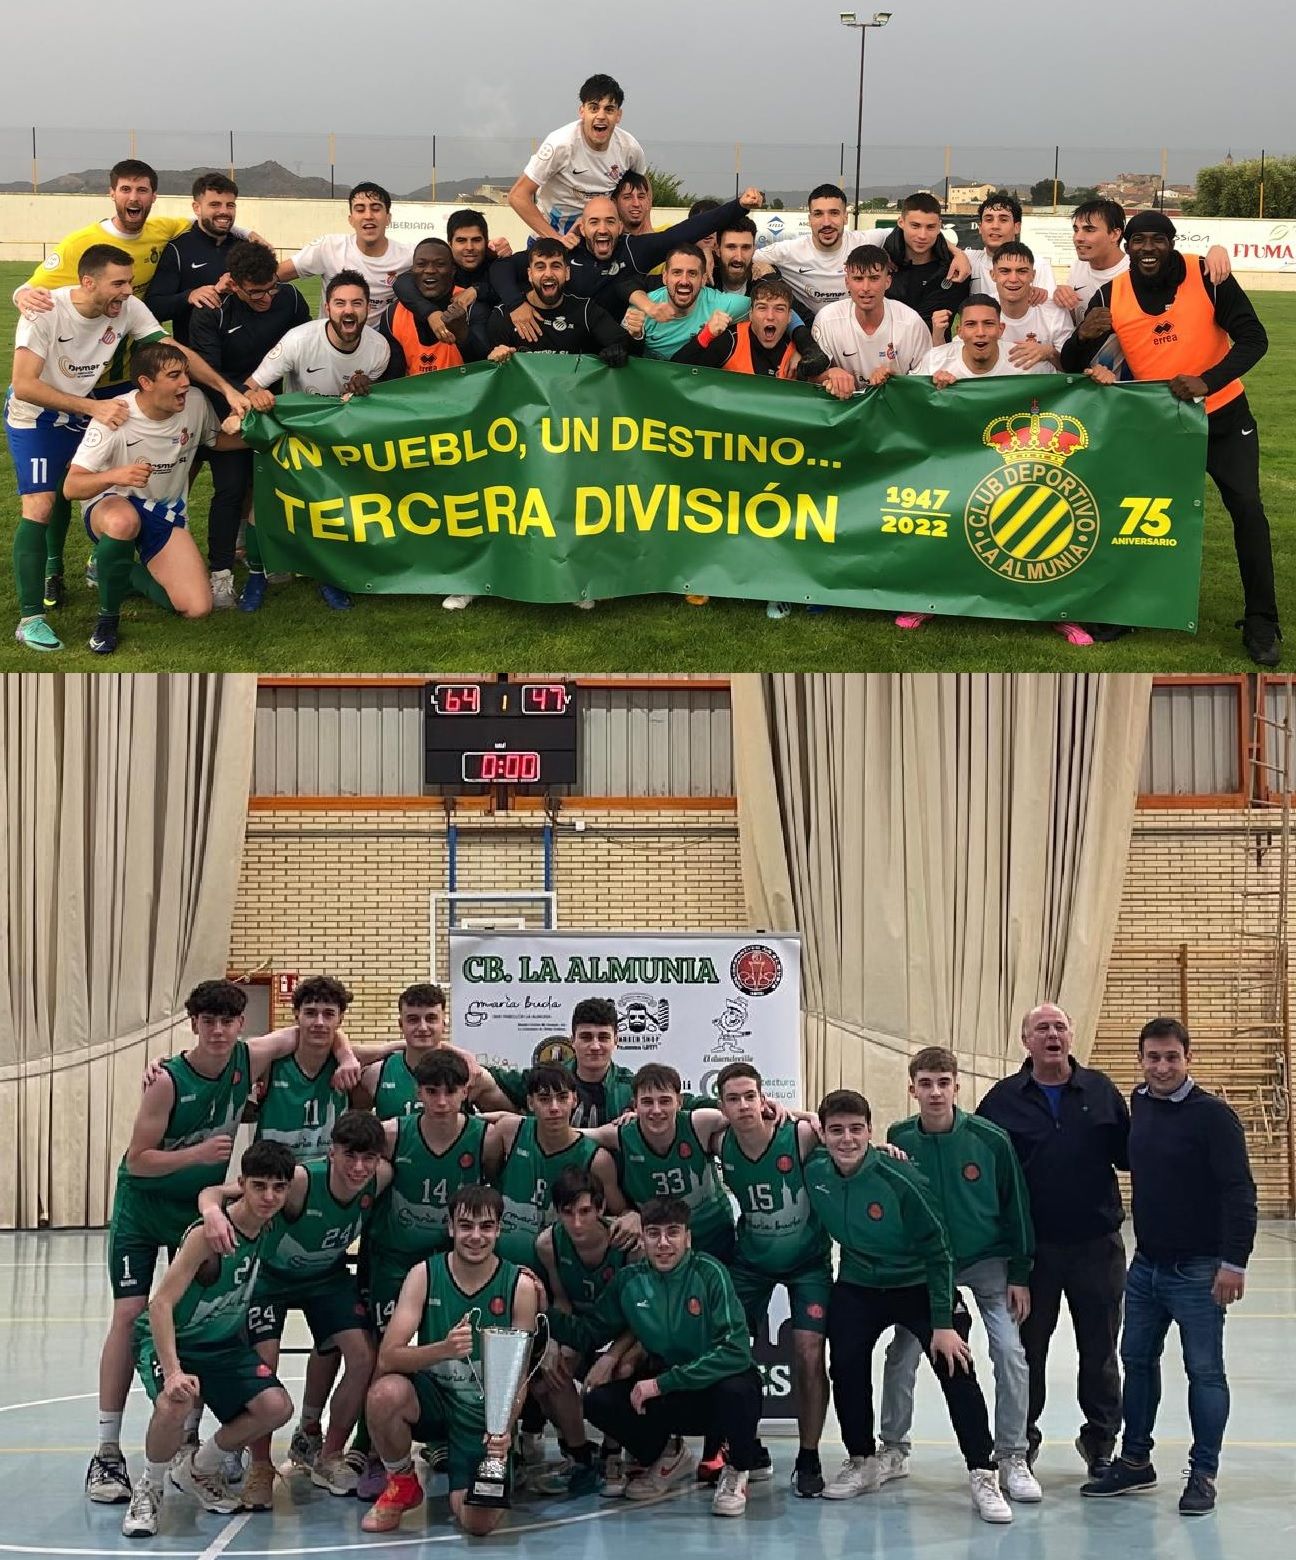 Enhorabuena por sus logros al Club Deportivo y al Club de Baloncesto La Almunia